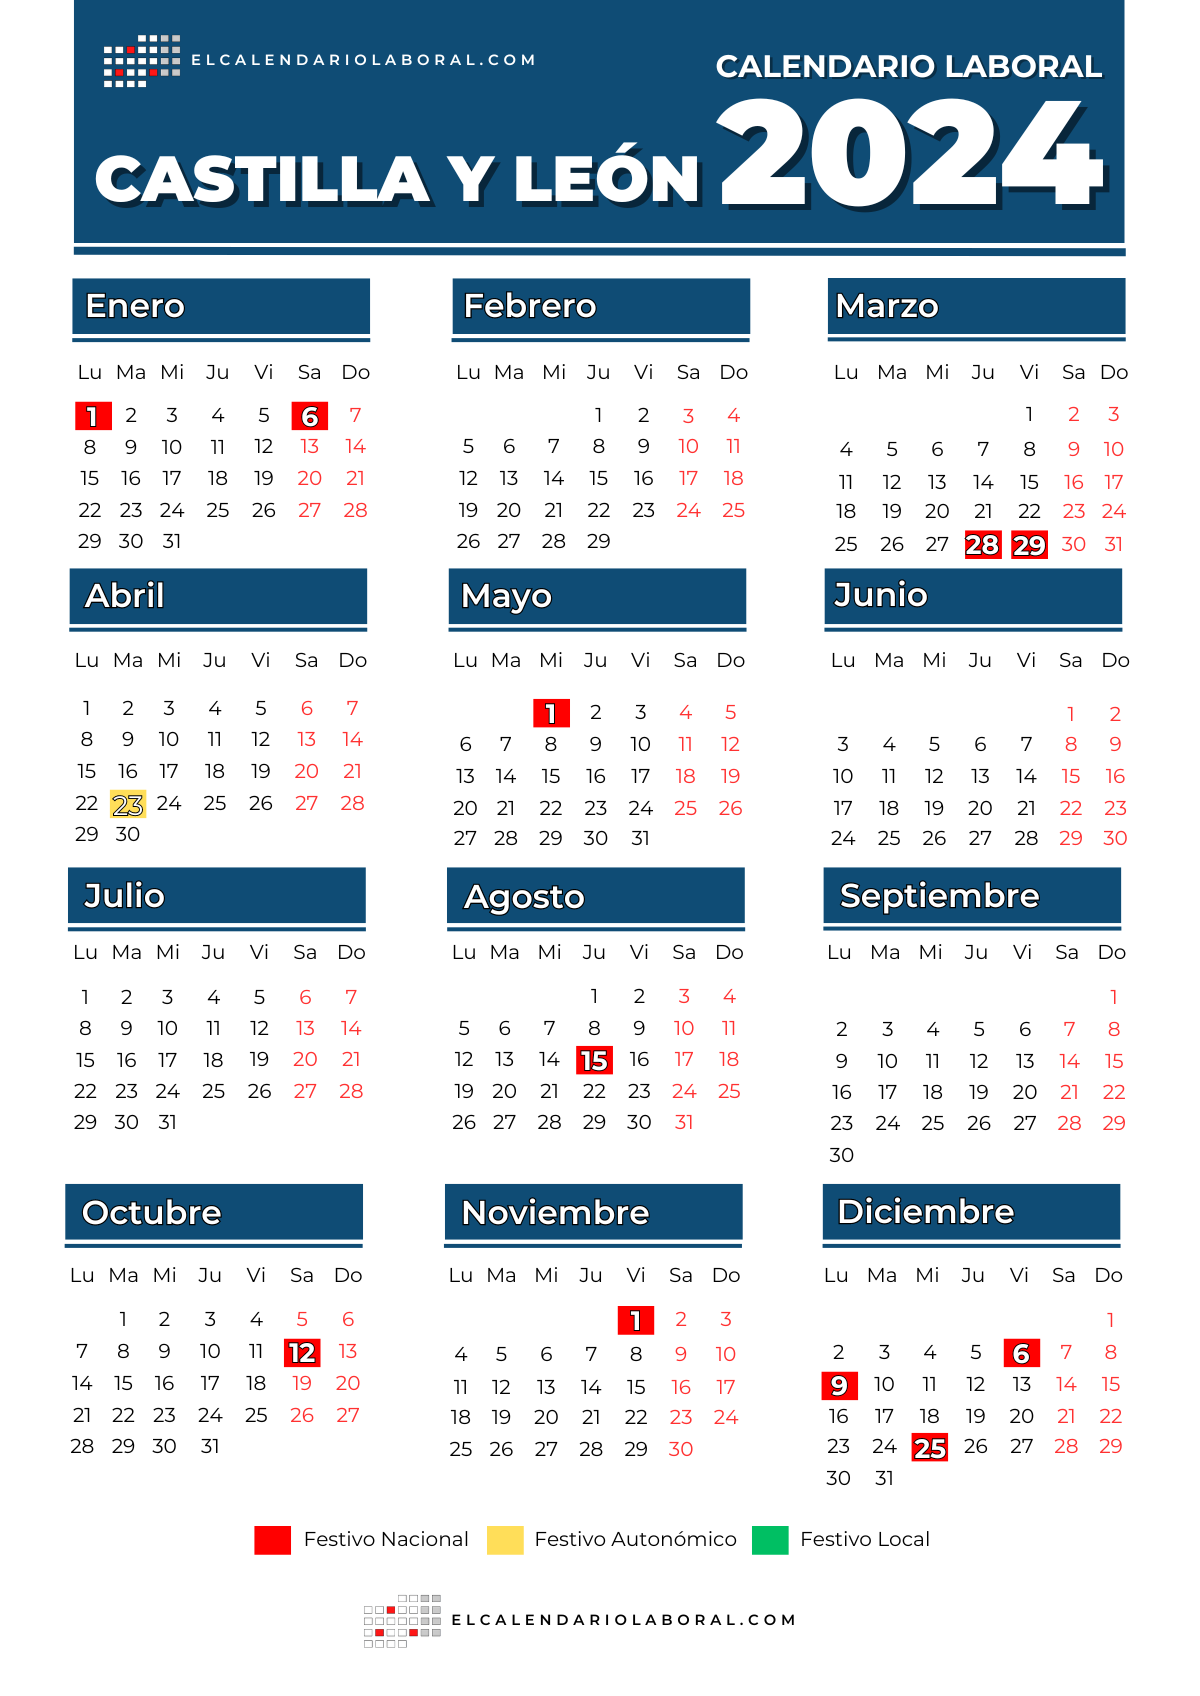 Calendario Laboral De Castilla Y León Festivos Y Puentes En 2024 4206